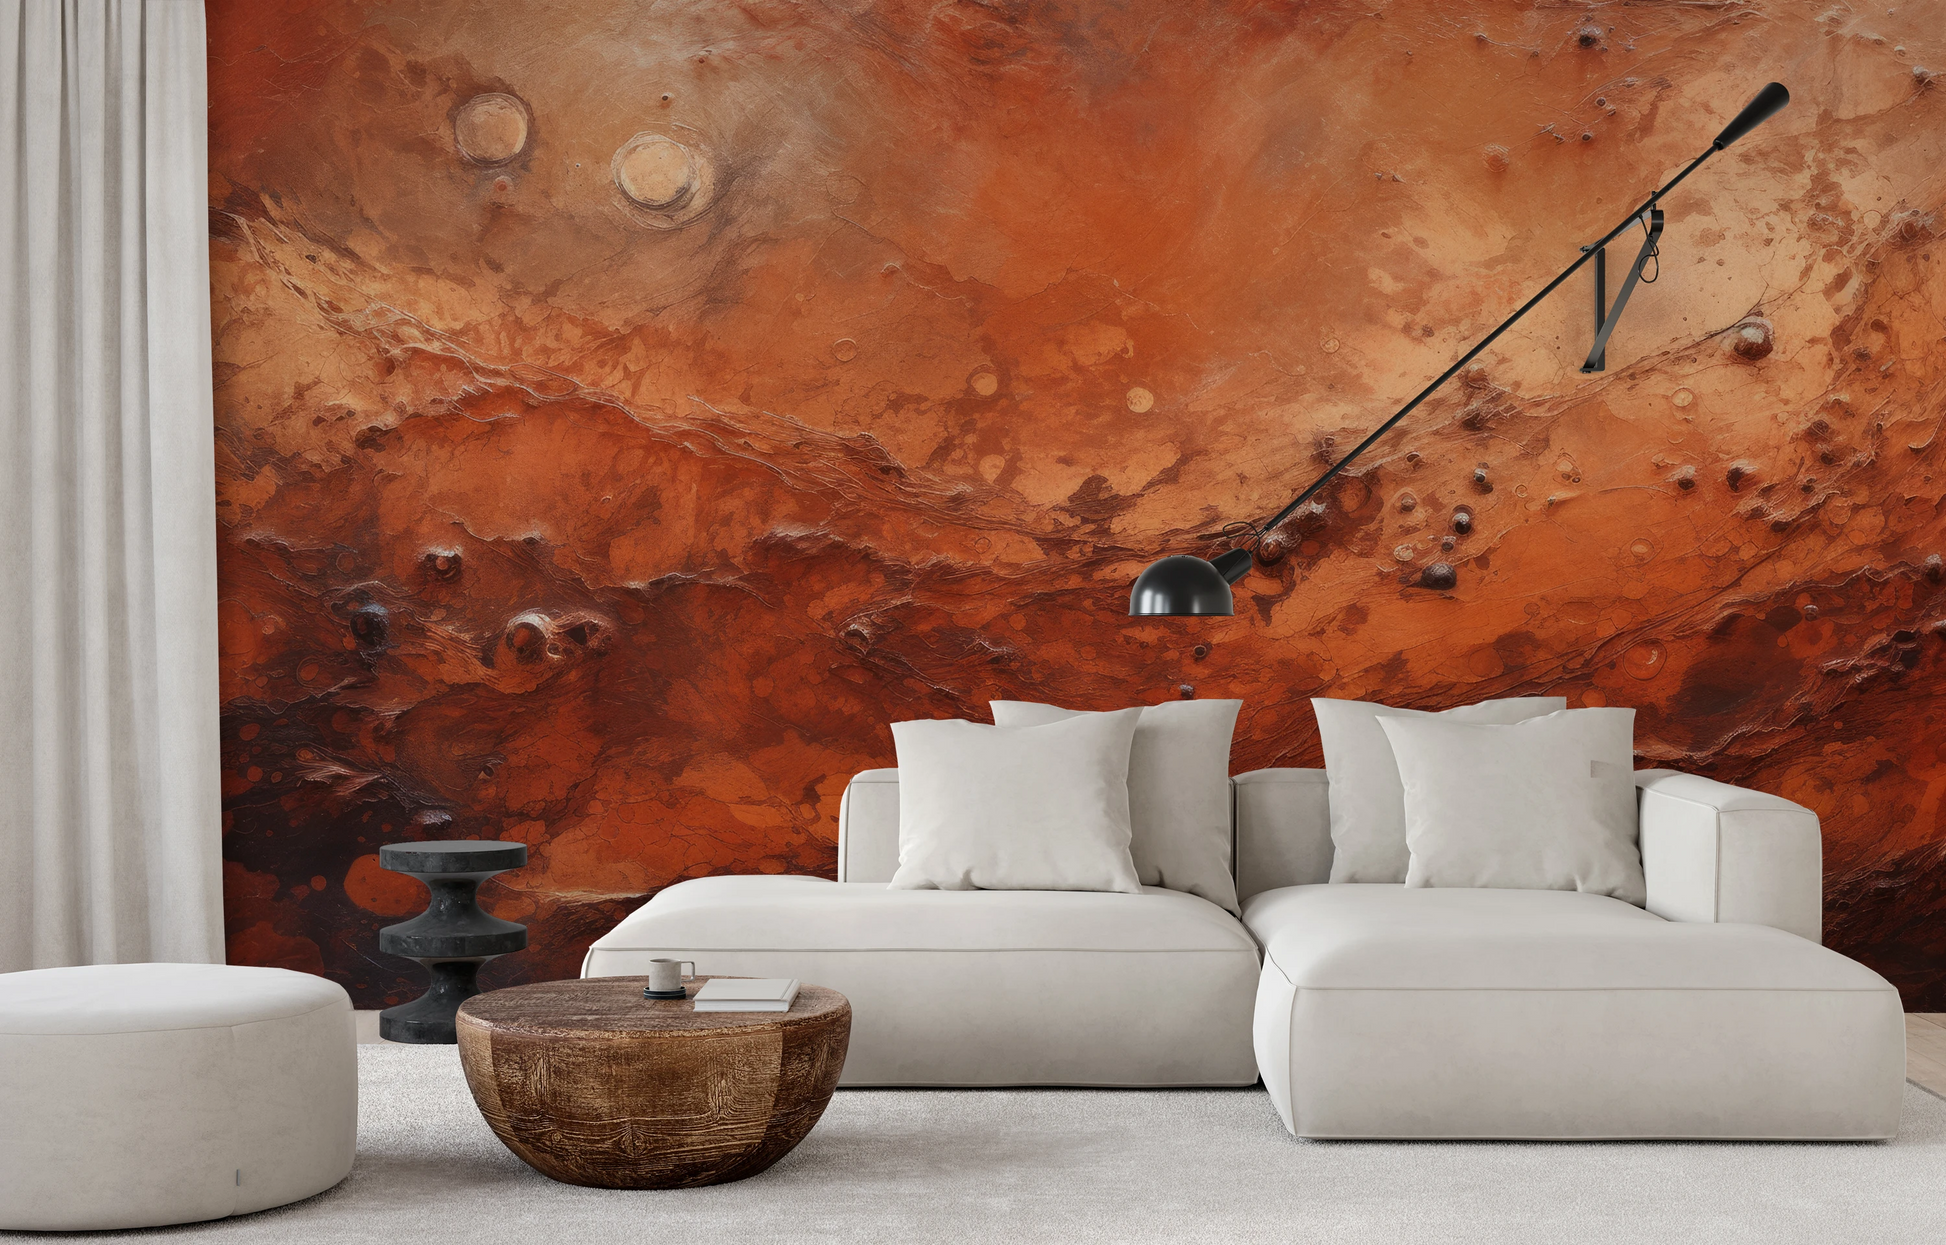 Fototapeta malowana o nazwie Martian Dust pokazana w aranżacji wnętrza.